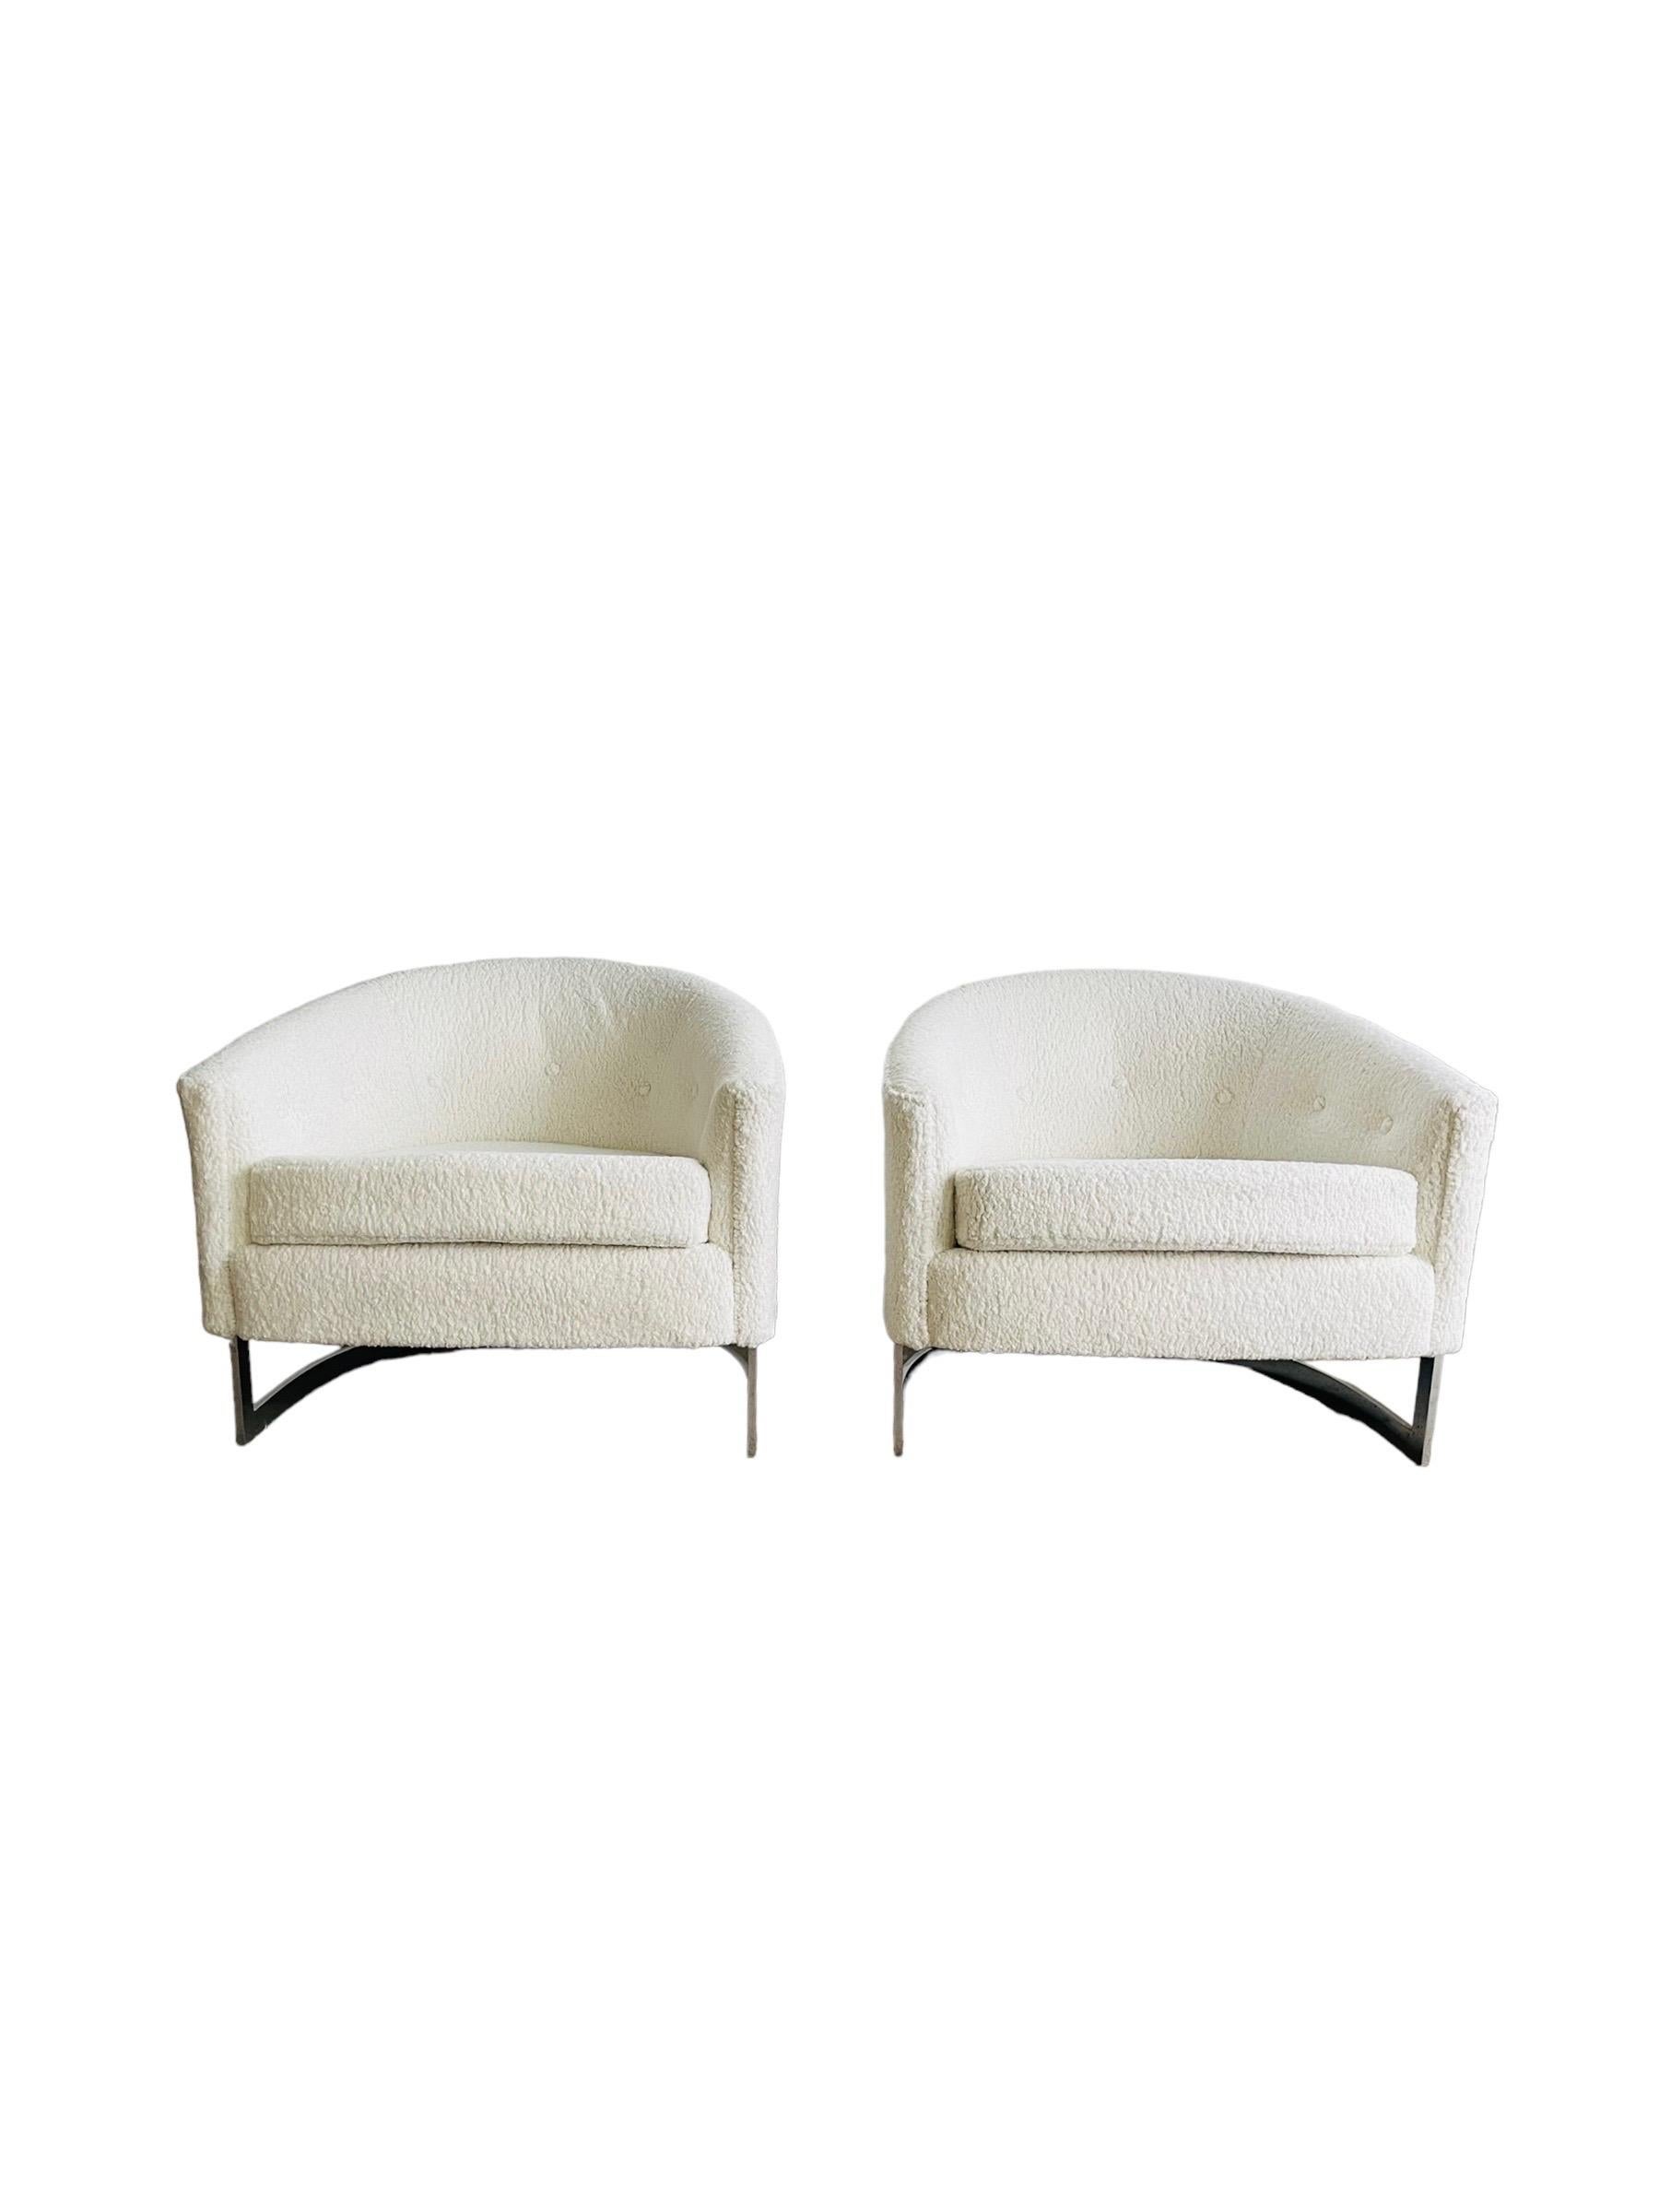 Superbe paire de chaises longues à dossier en forme de tonneau, de style Mid-Century Modern, conçues par Finn Andersen pour Selig vers 1968. Les chaises ont été restaurées et retapissées dans un tissu Boucle de qualité. Elles seront un atout pour